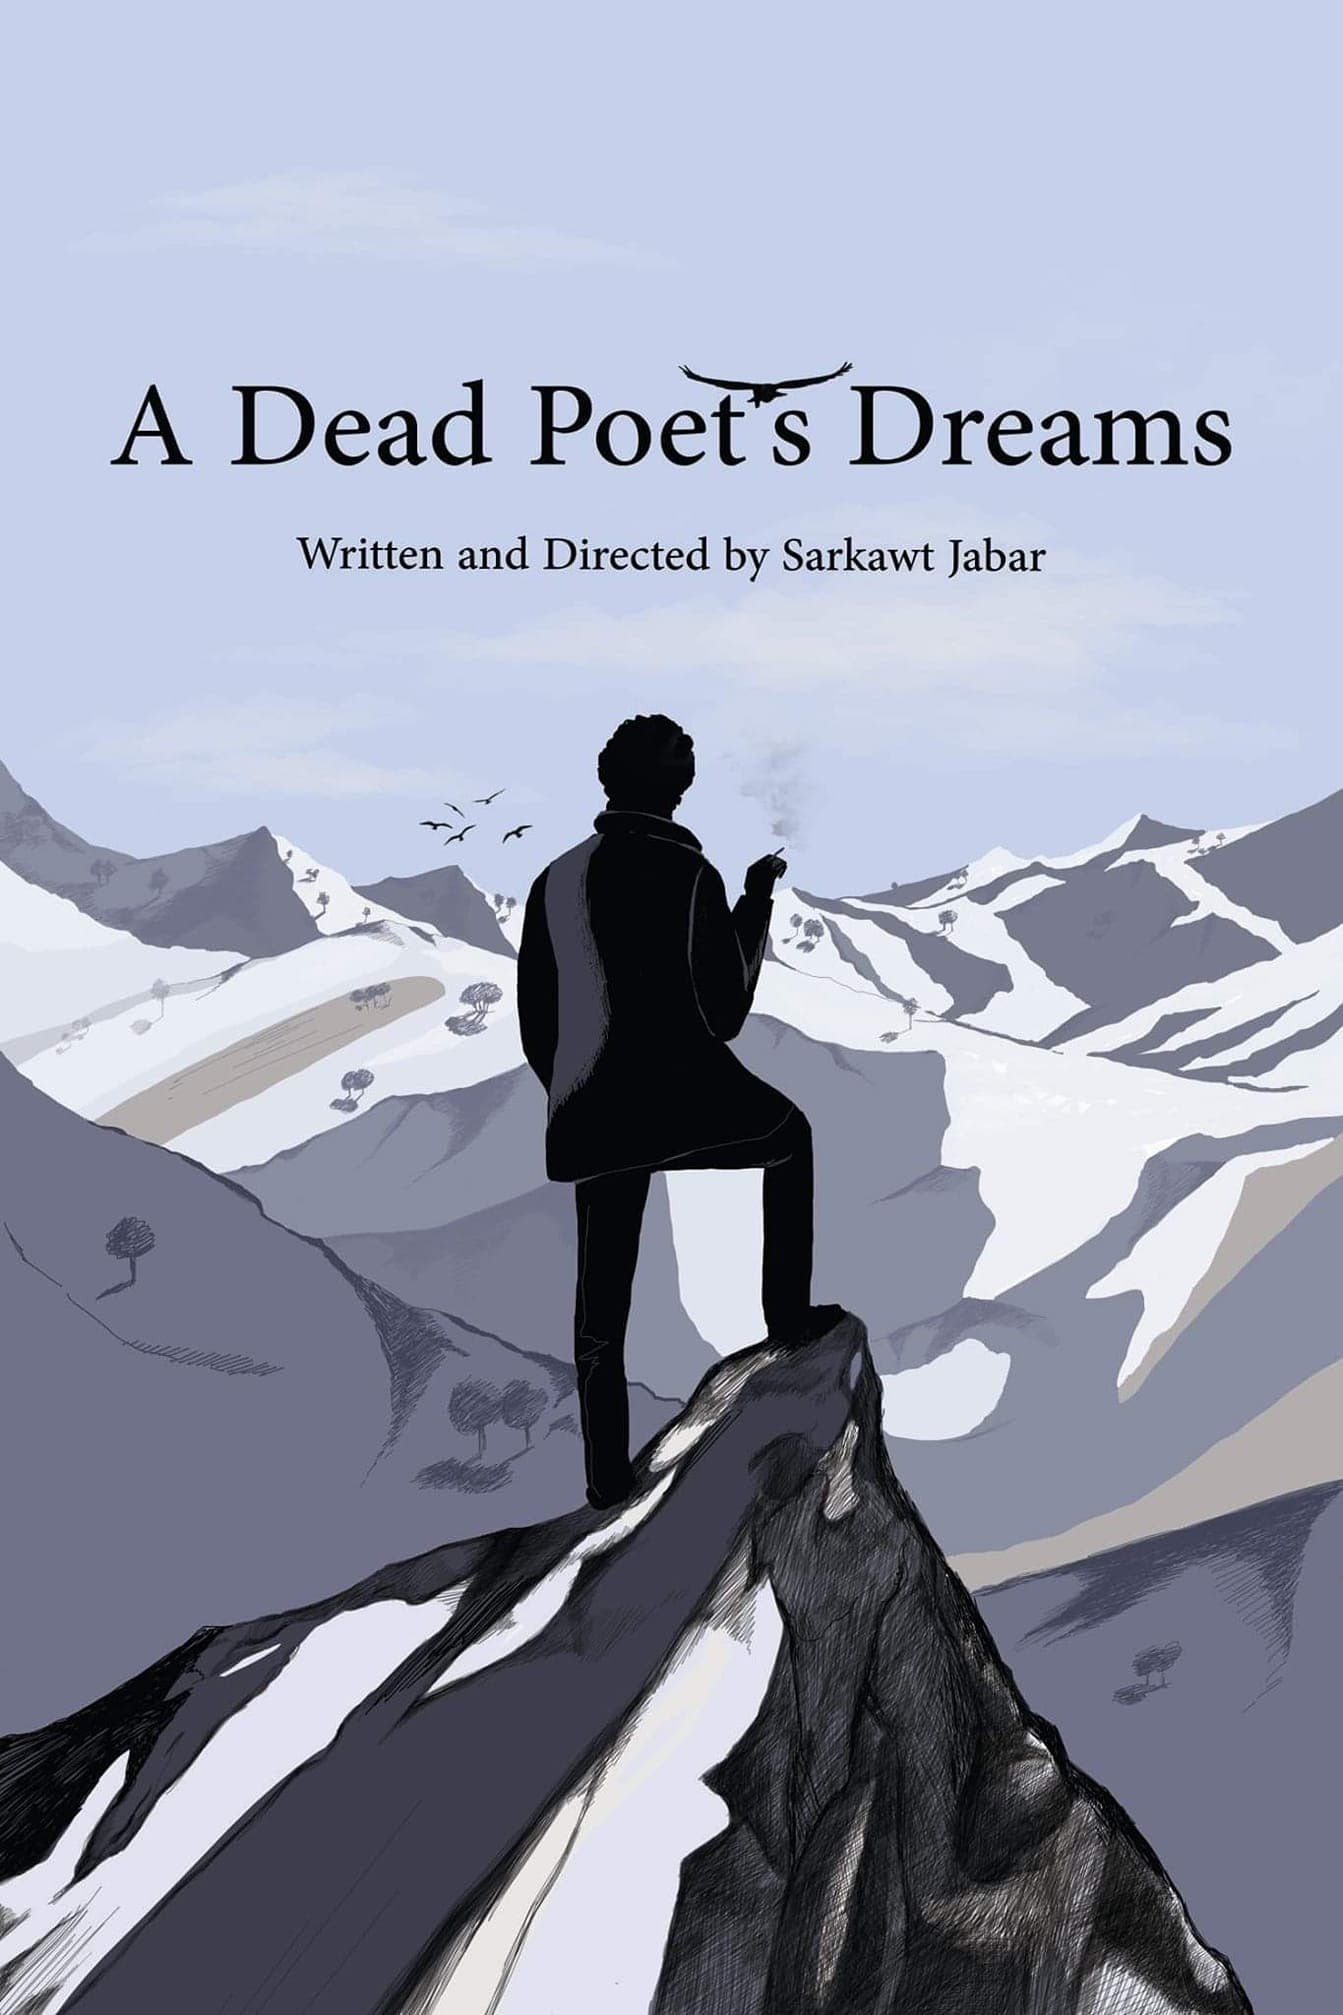 A Dead Poet's Dreams